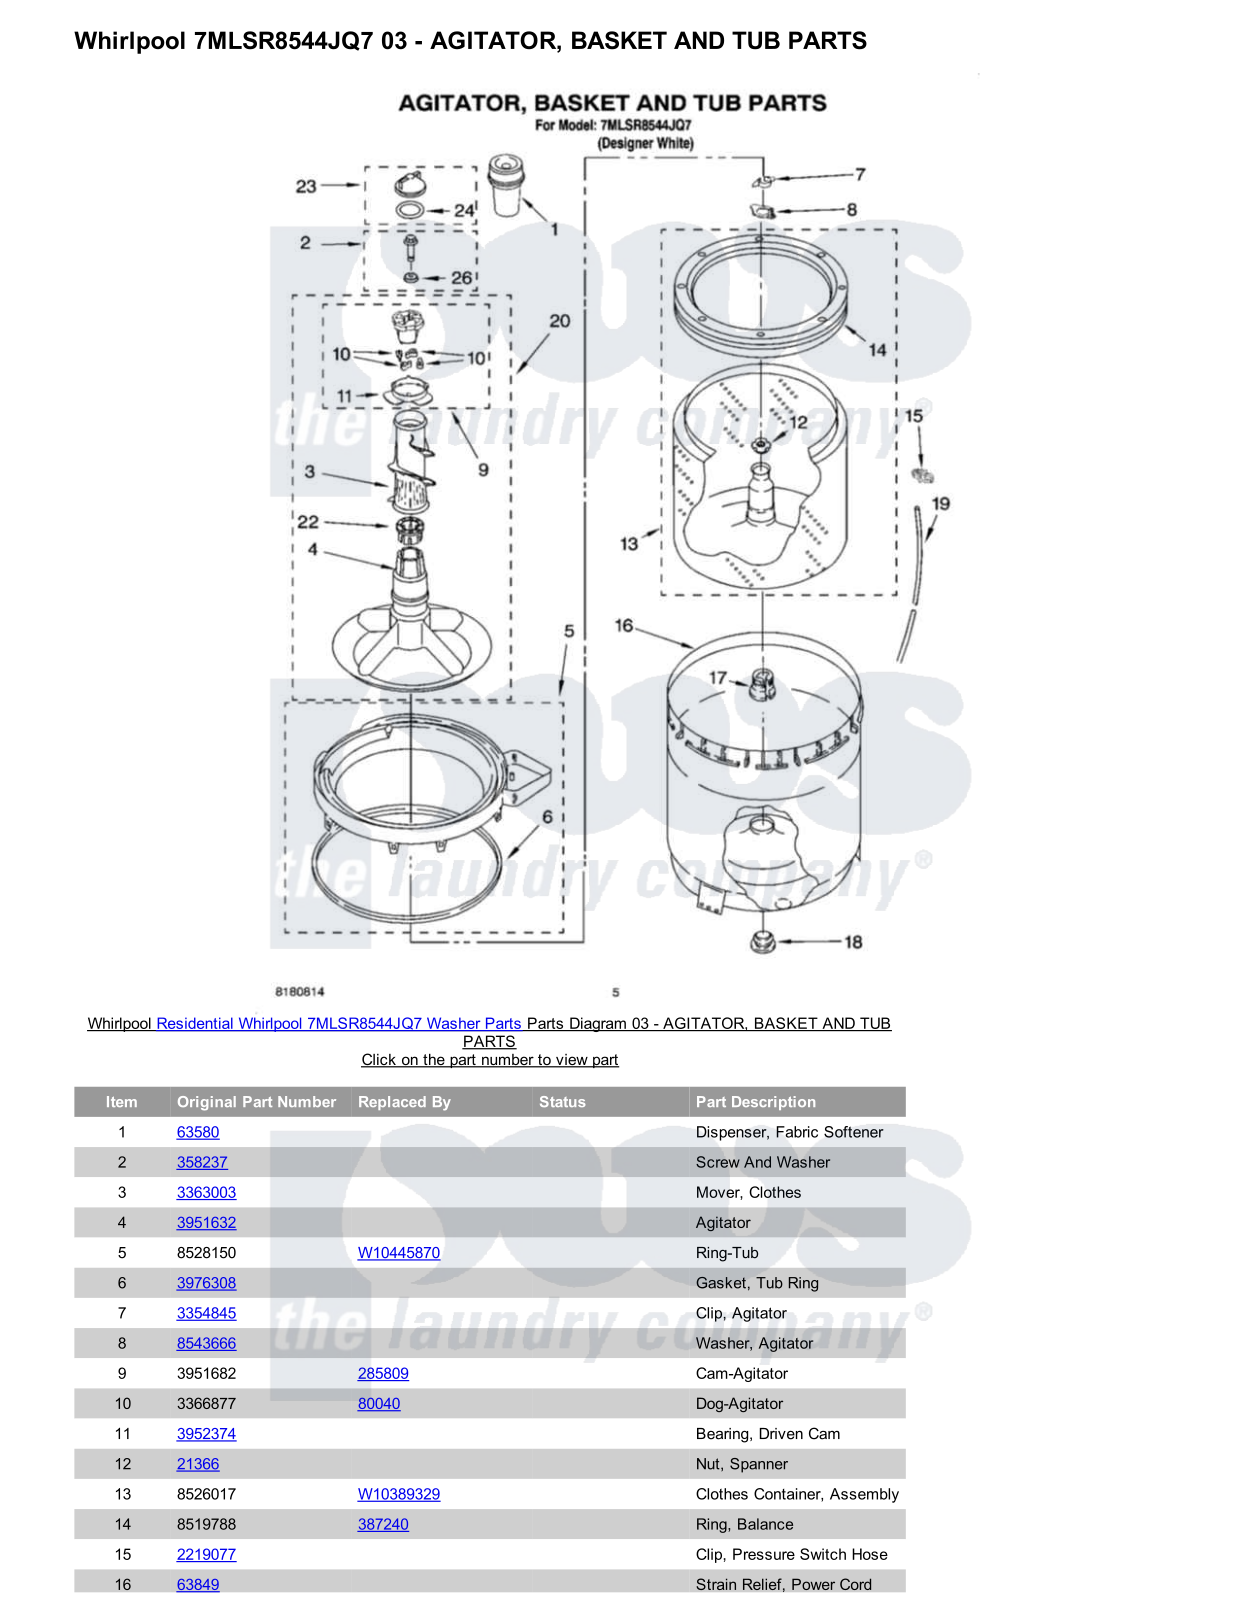 Whirlpool 7MLSR8544JQ7 Parts Diagram